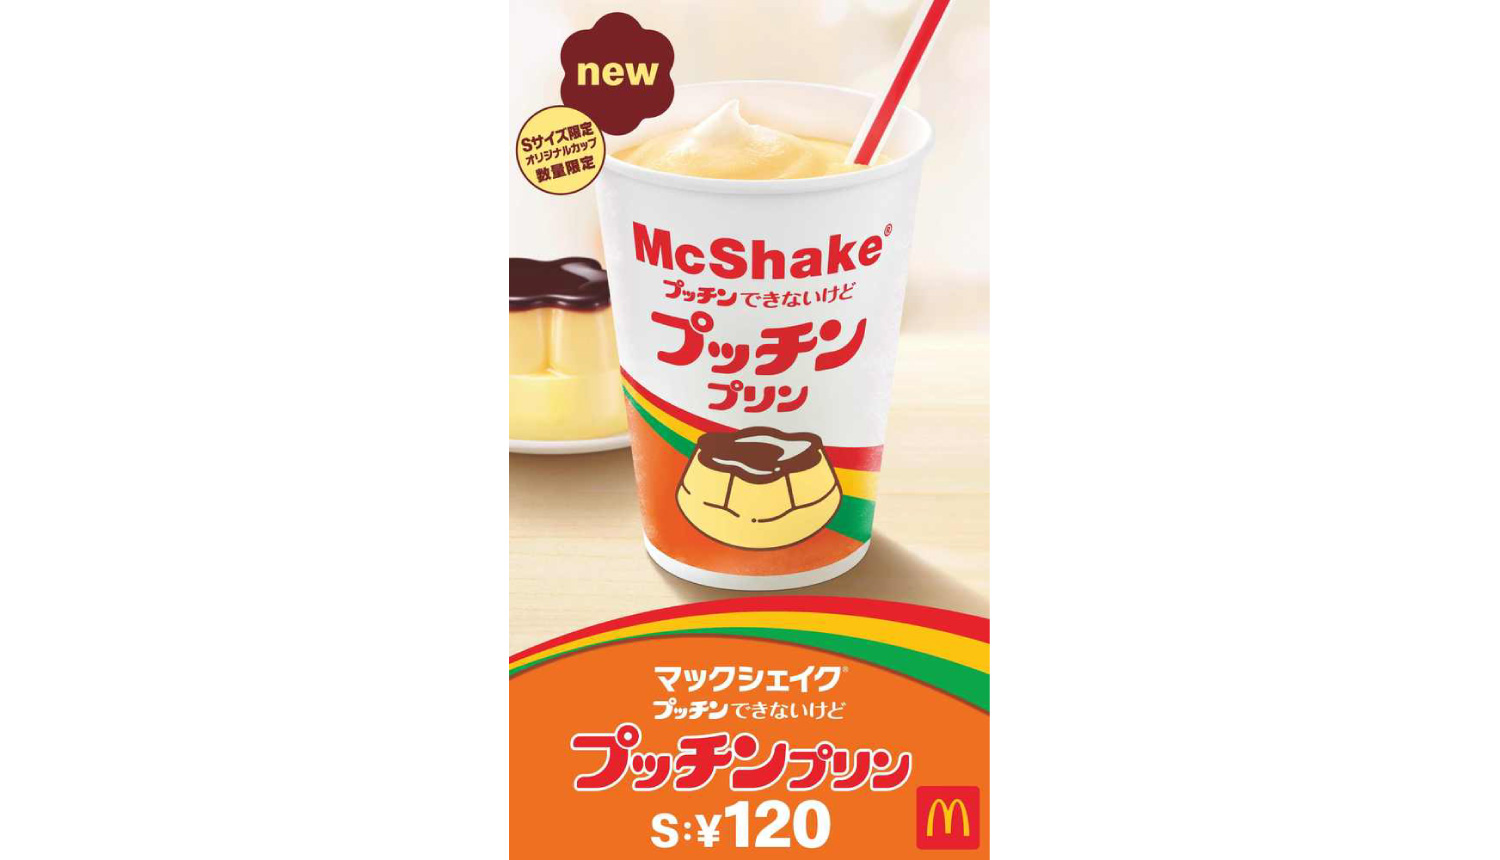 マックシェイク-McShake-麥當勞